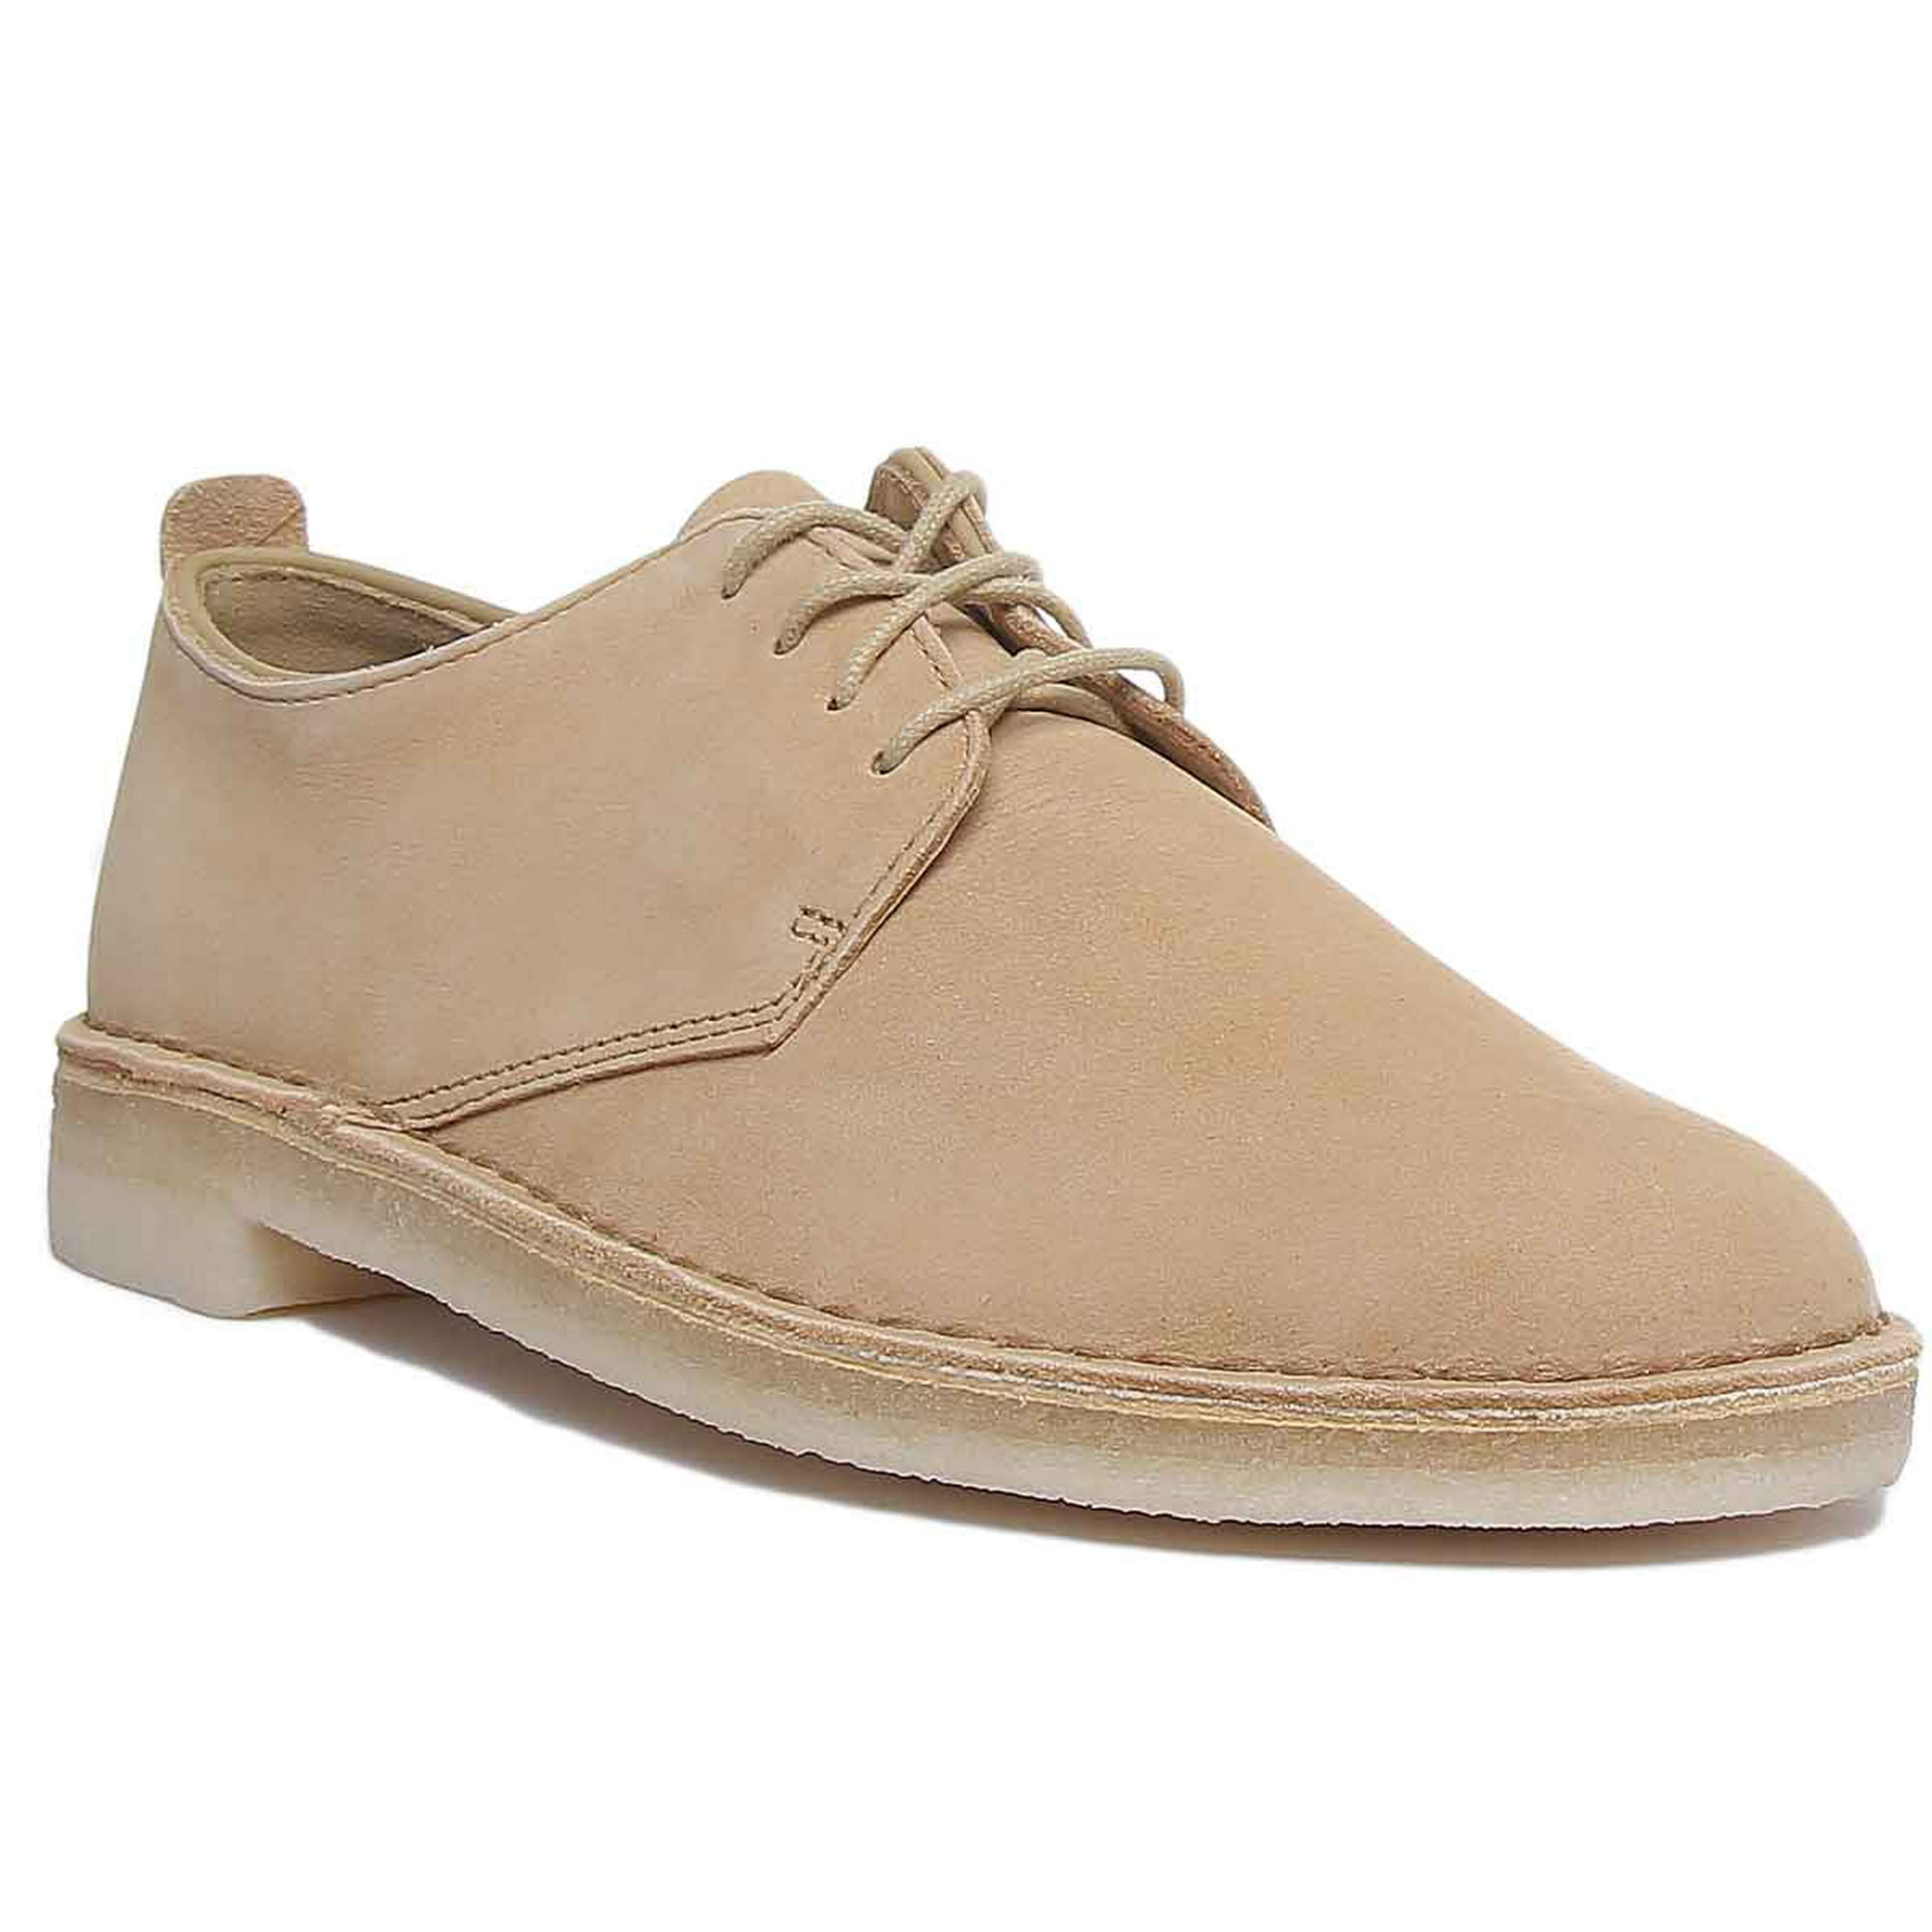 Krønike kande klæde Clarks Desert London Men's Beeswax Leather Shoes In Beige Size 9.5 -  Walmart.com